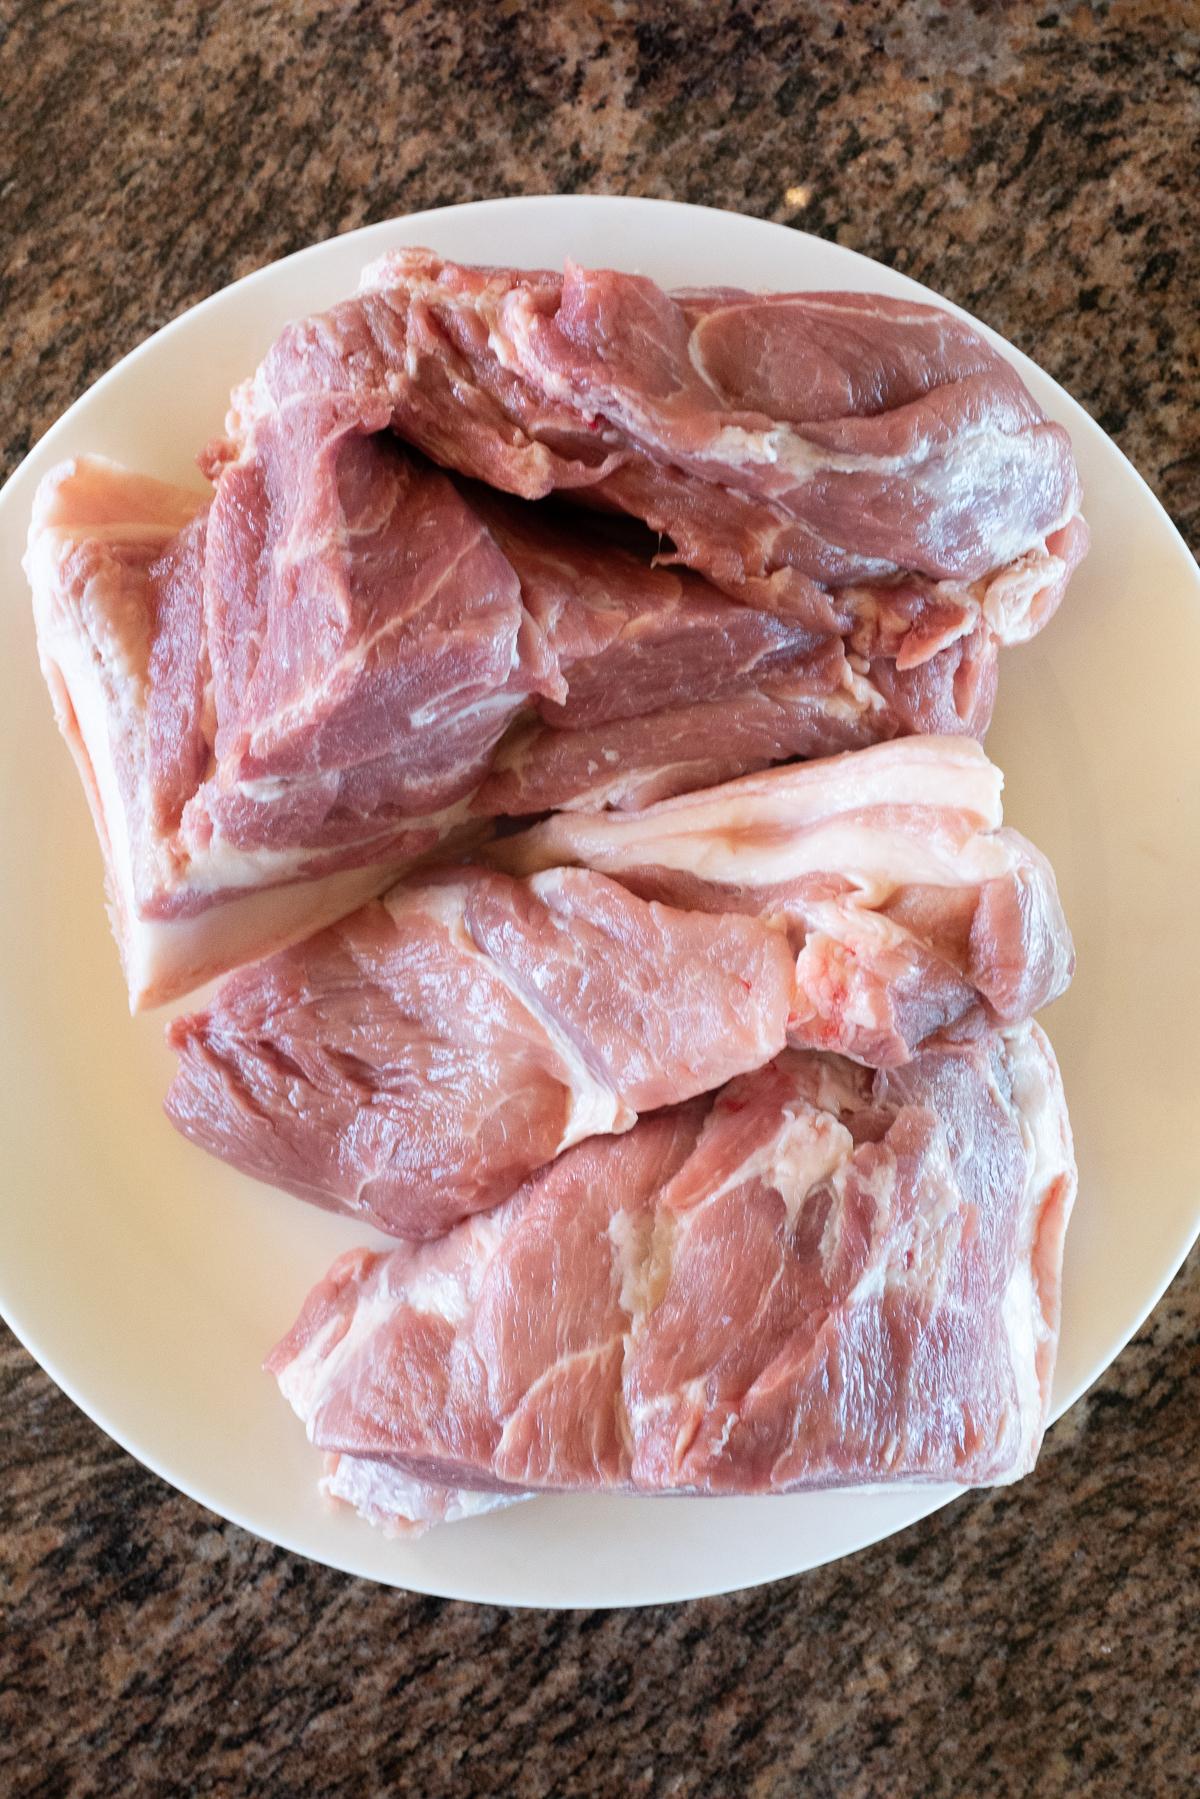 3 pound boneless pork butt on a plate